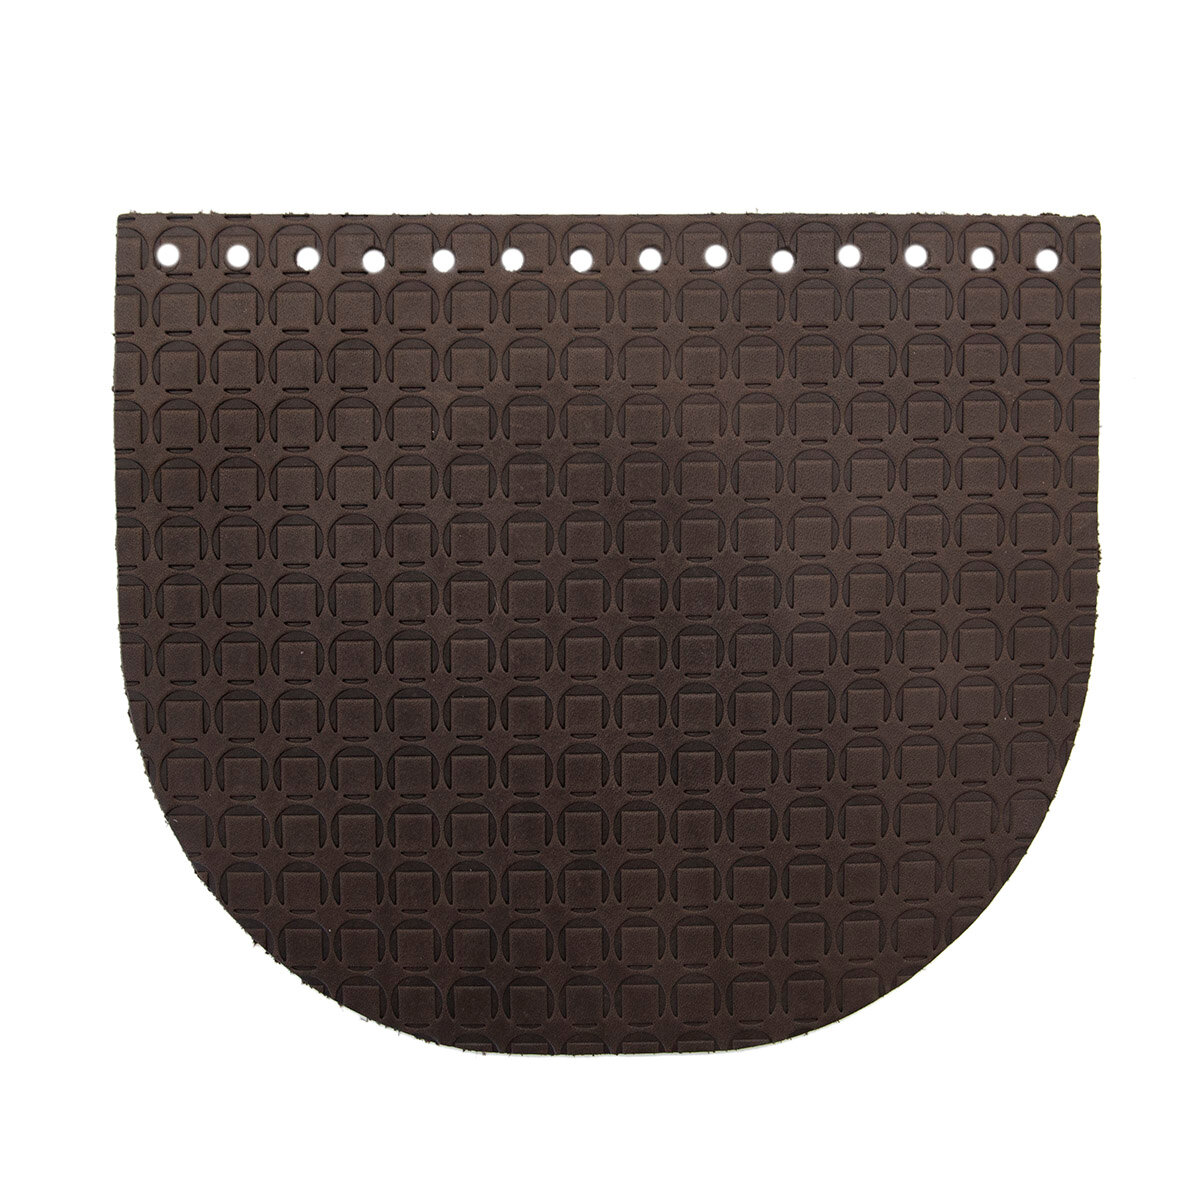 Крышечка для сумки Подкова, 20,4см*17,2см, дизайн №2010, 100% кожа (темно-коричневый)